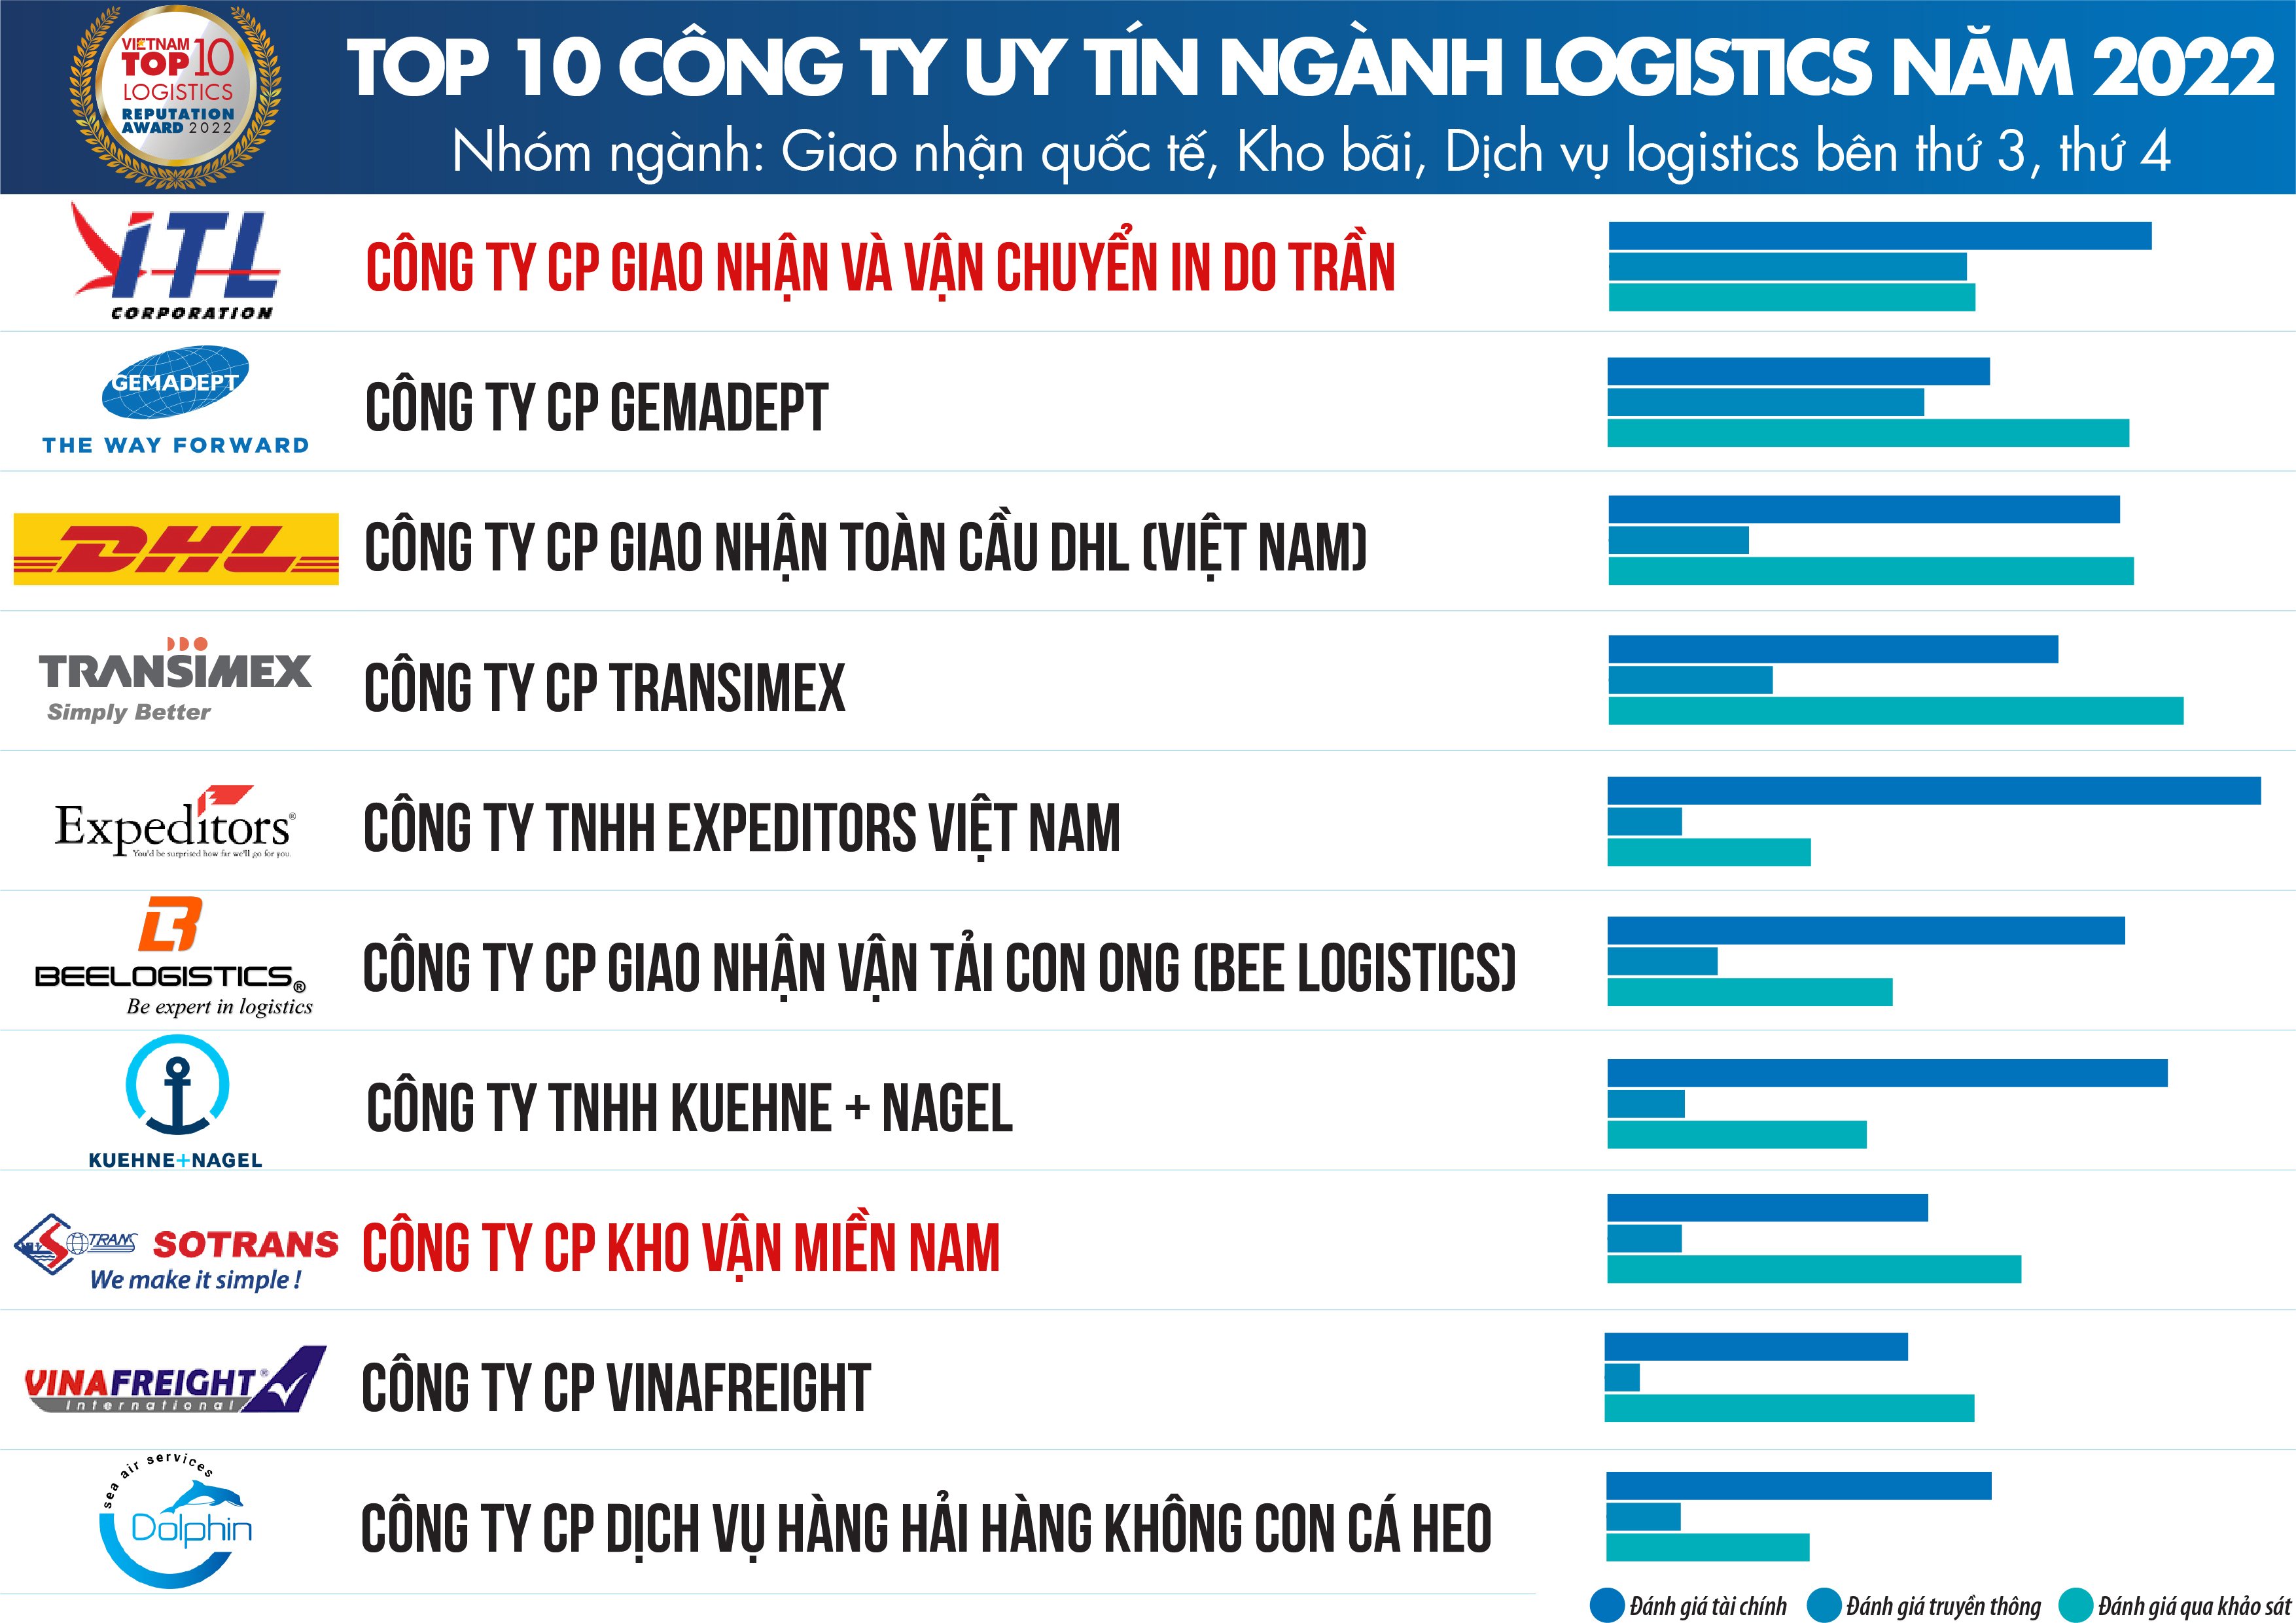 SOTRANS Group Nhiều Năm Liền Đạt Top 10 Công Ty Uy Tín Nhất Ngành Logistics